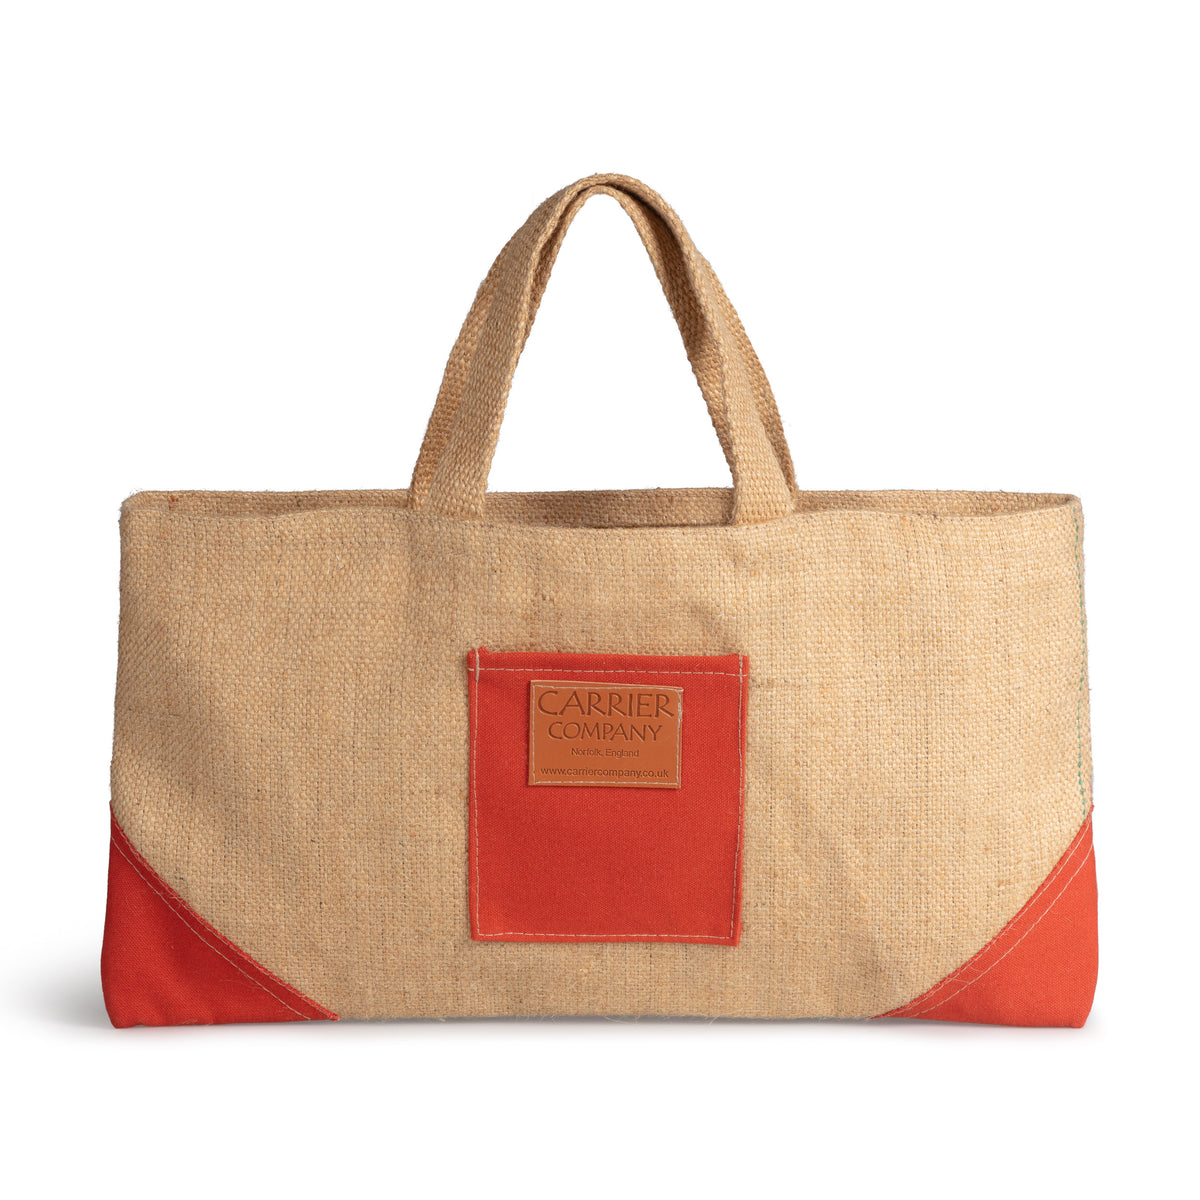 Back Door Gardening Bag | Gardener's Bag | Tool Bag | Carrier Company